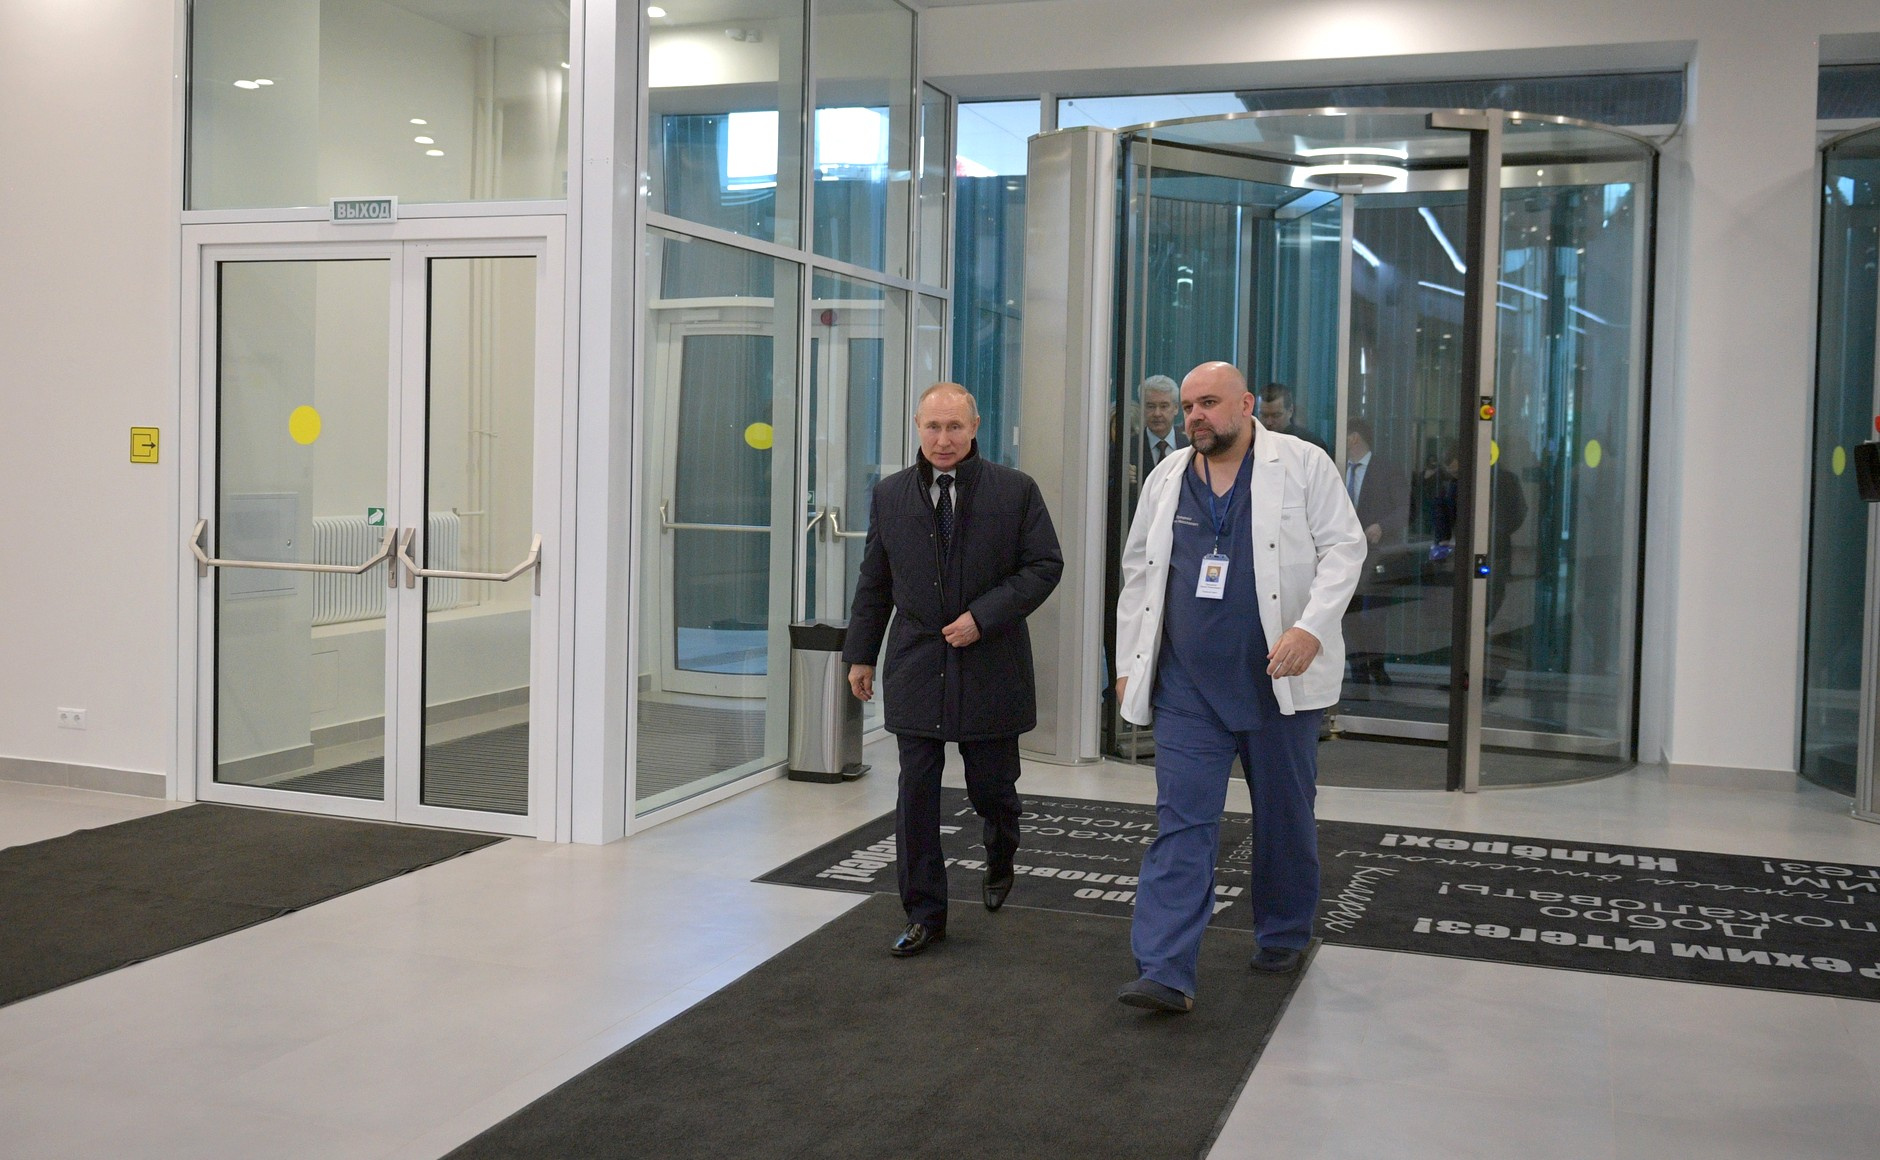 Неделю назад Проценко встречался с Путиным. Расстояние между ними явно меньше 1,5 метра